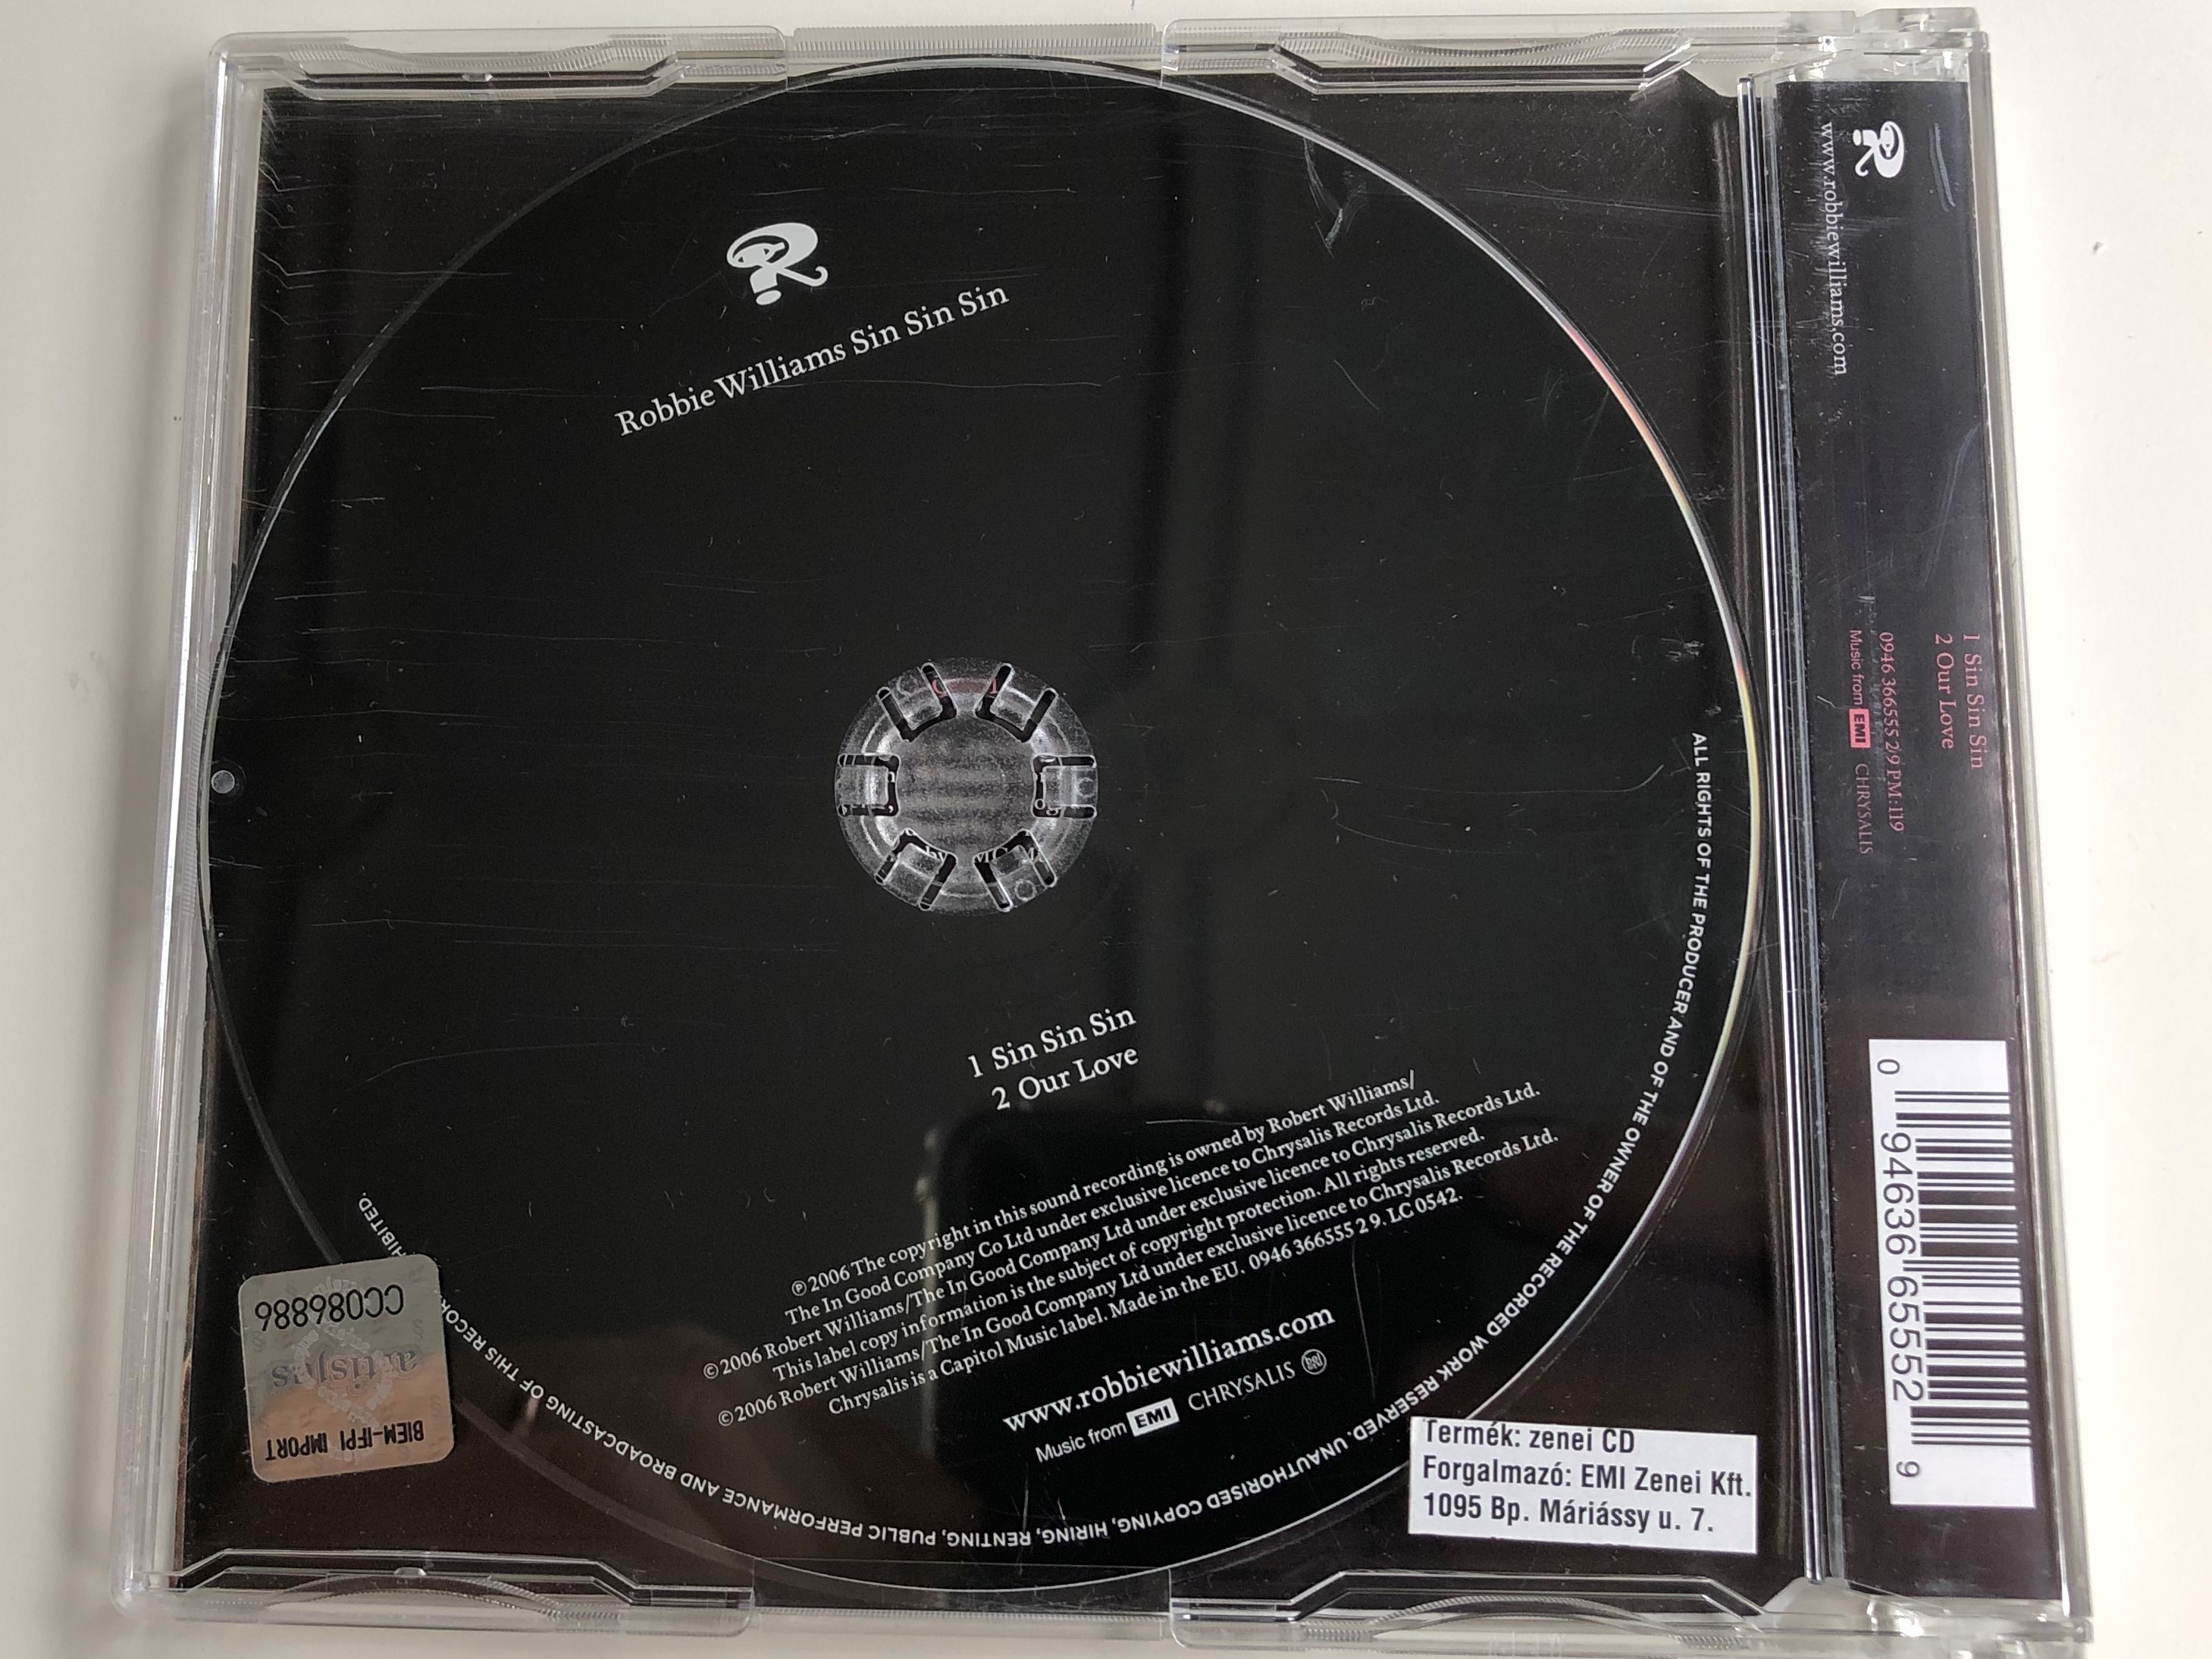 robbie-williams-sin-sin-sin-chrysalis-audio-cd-2006-094636655628-2-.jpg